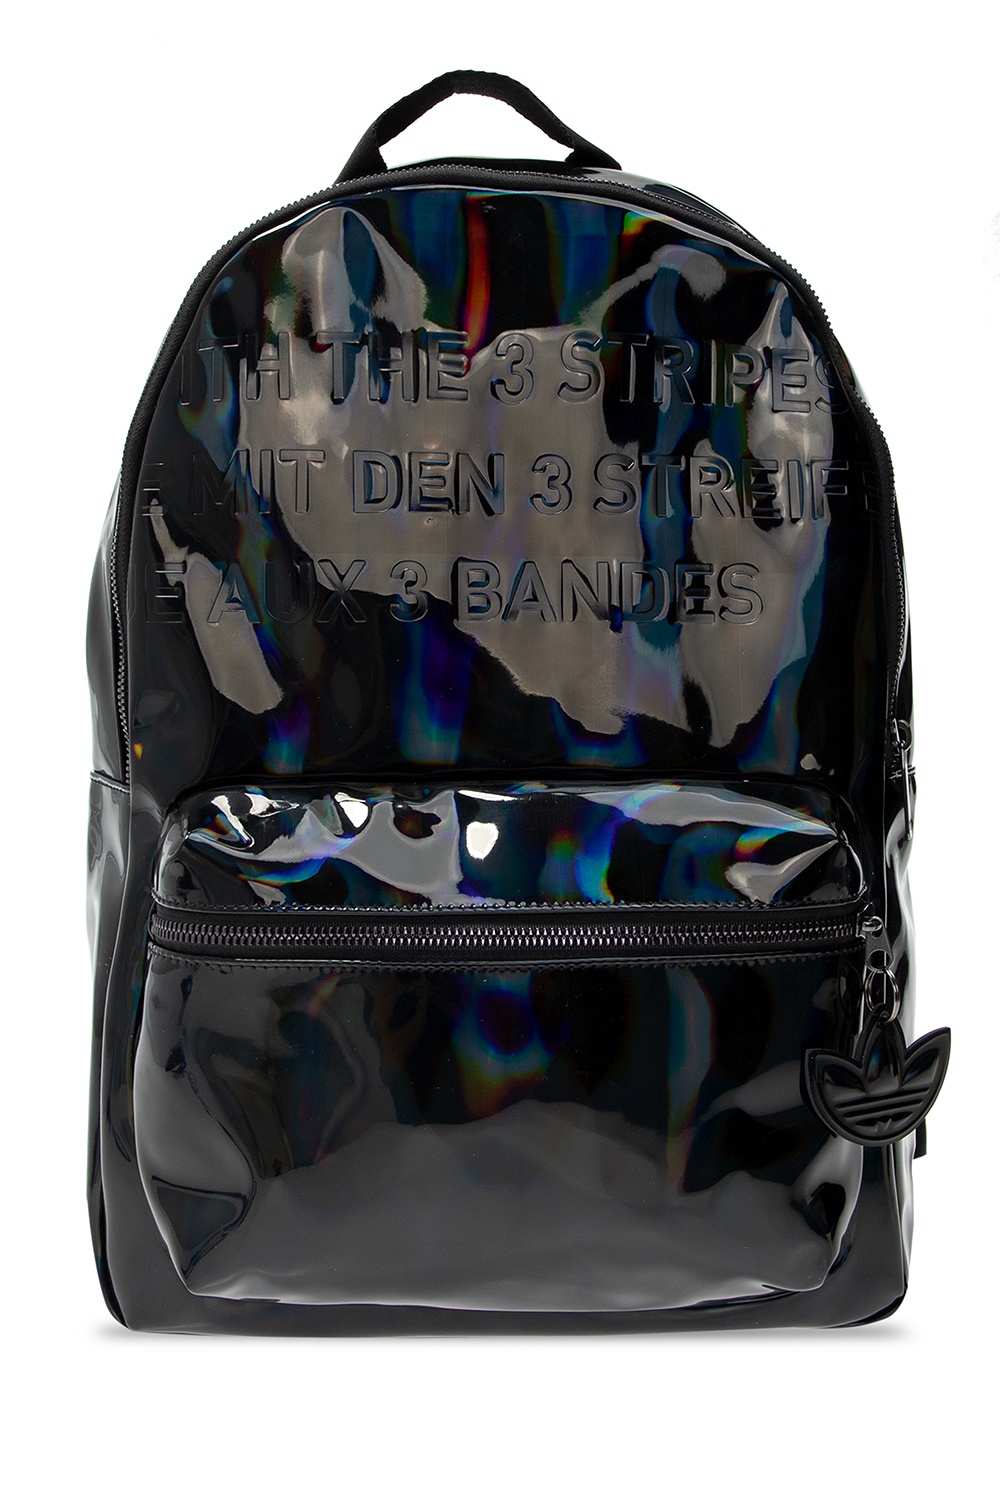 holographic adidas bag